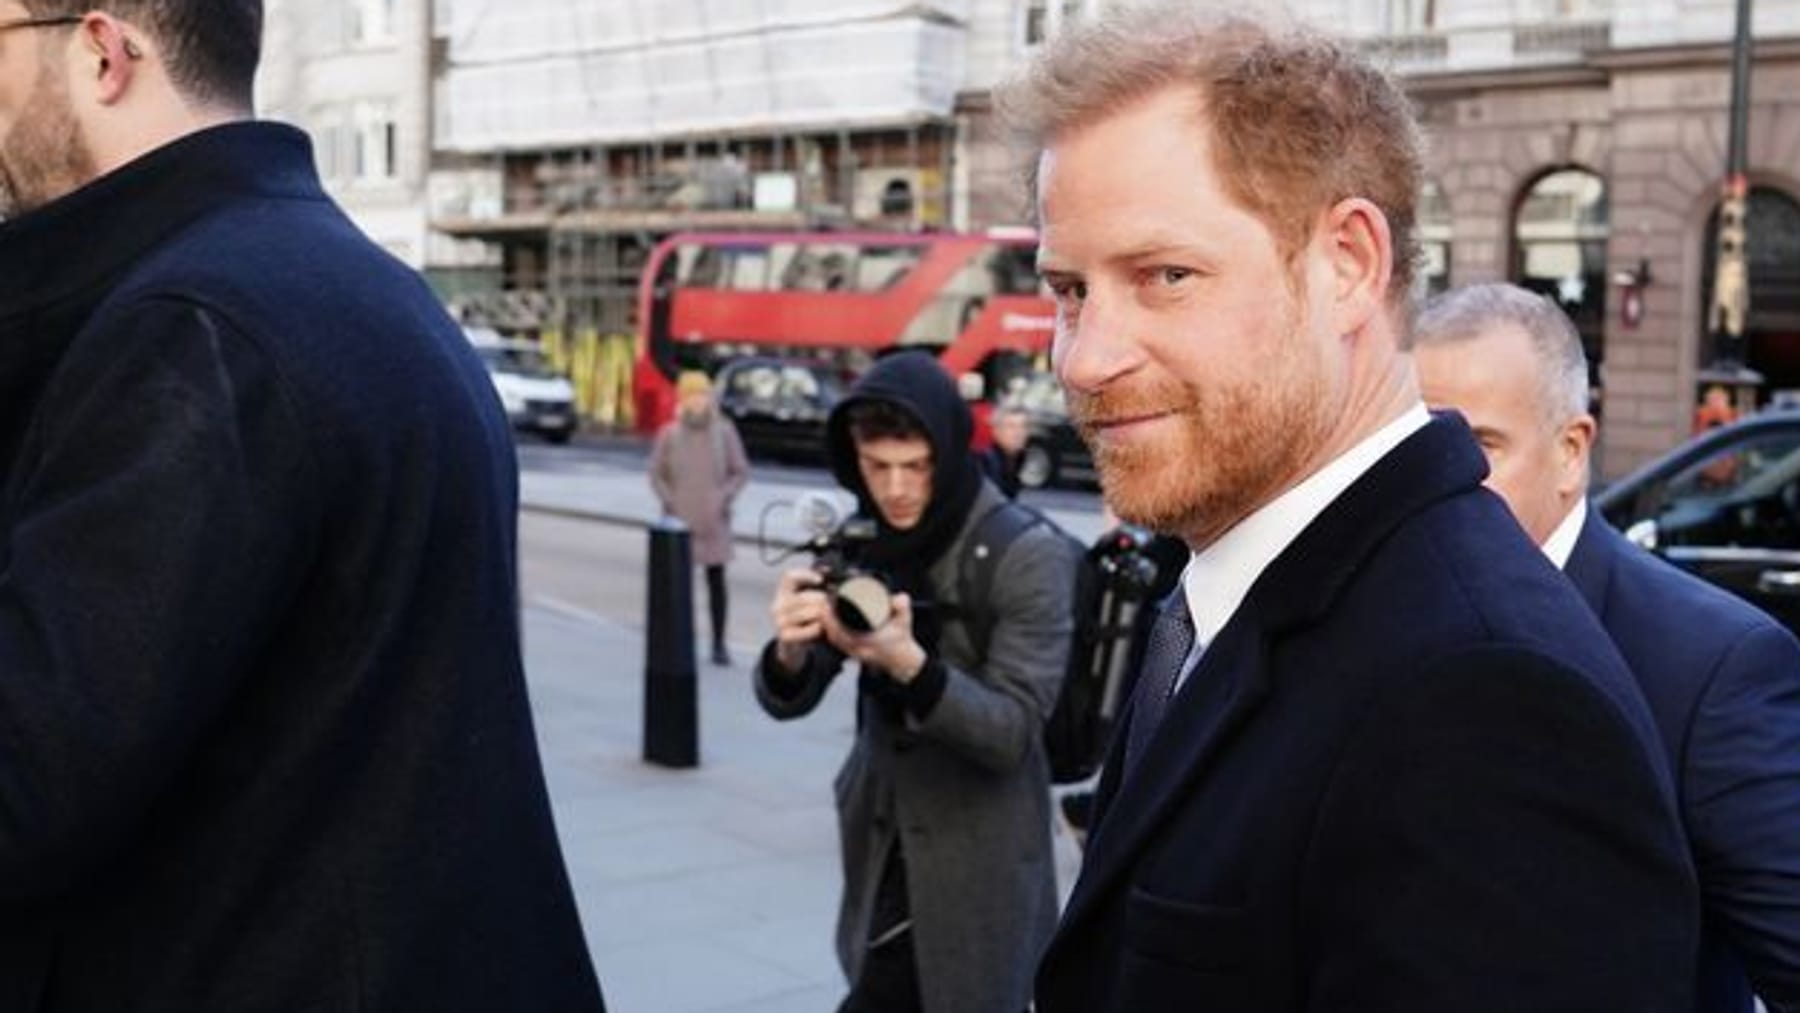 El príncipe Harry sorpresivamente en Londres: escenas estridentes en la corte